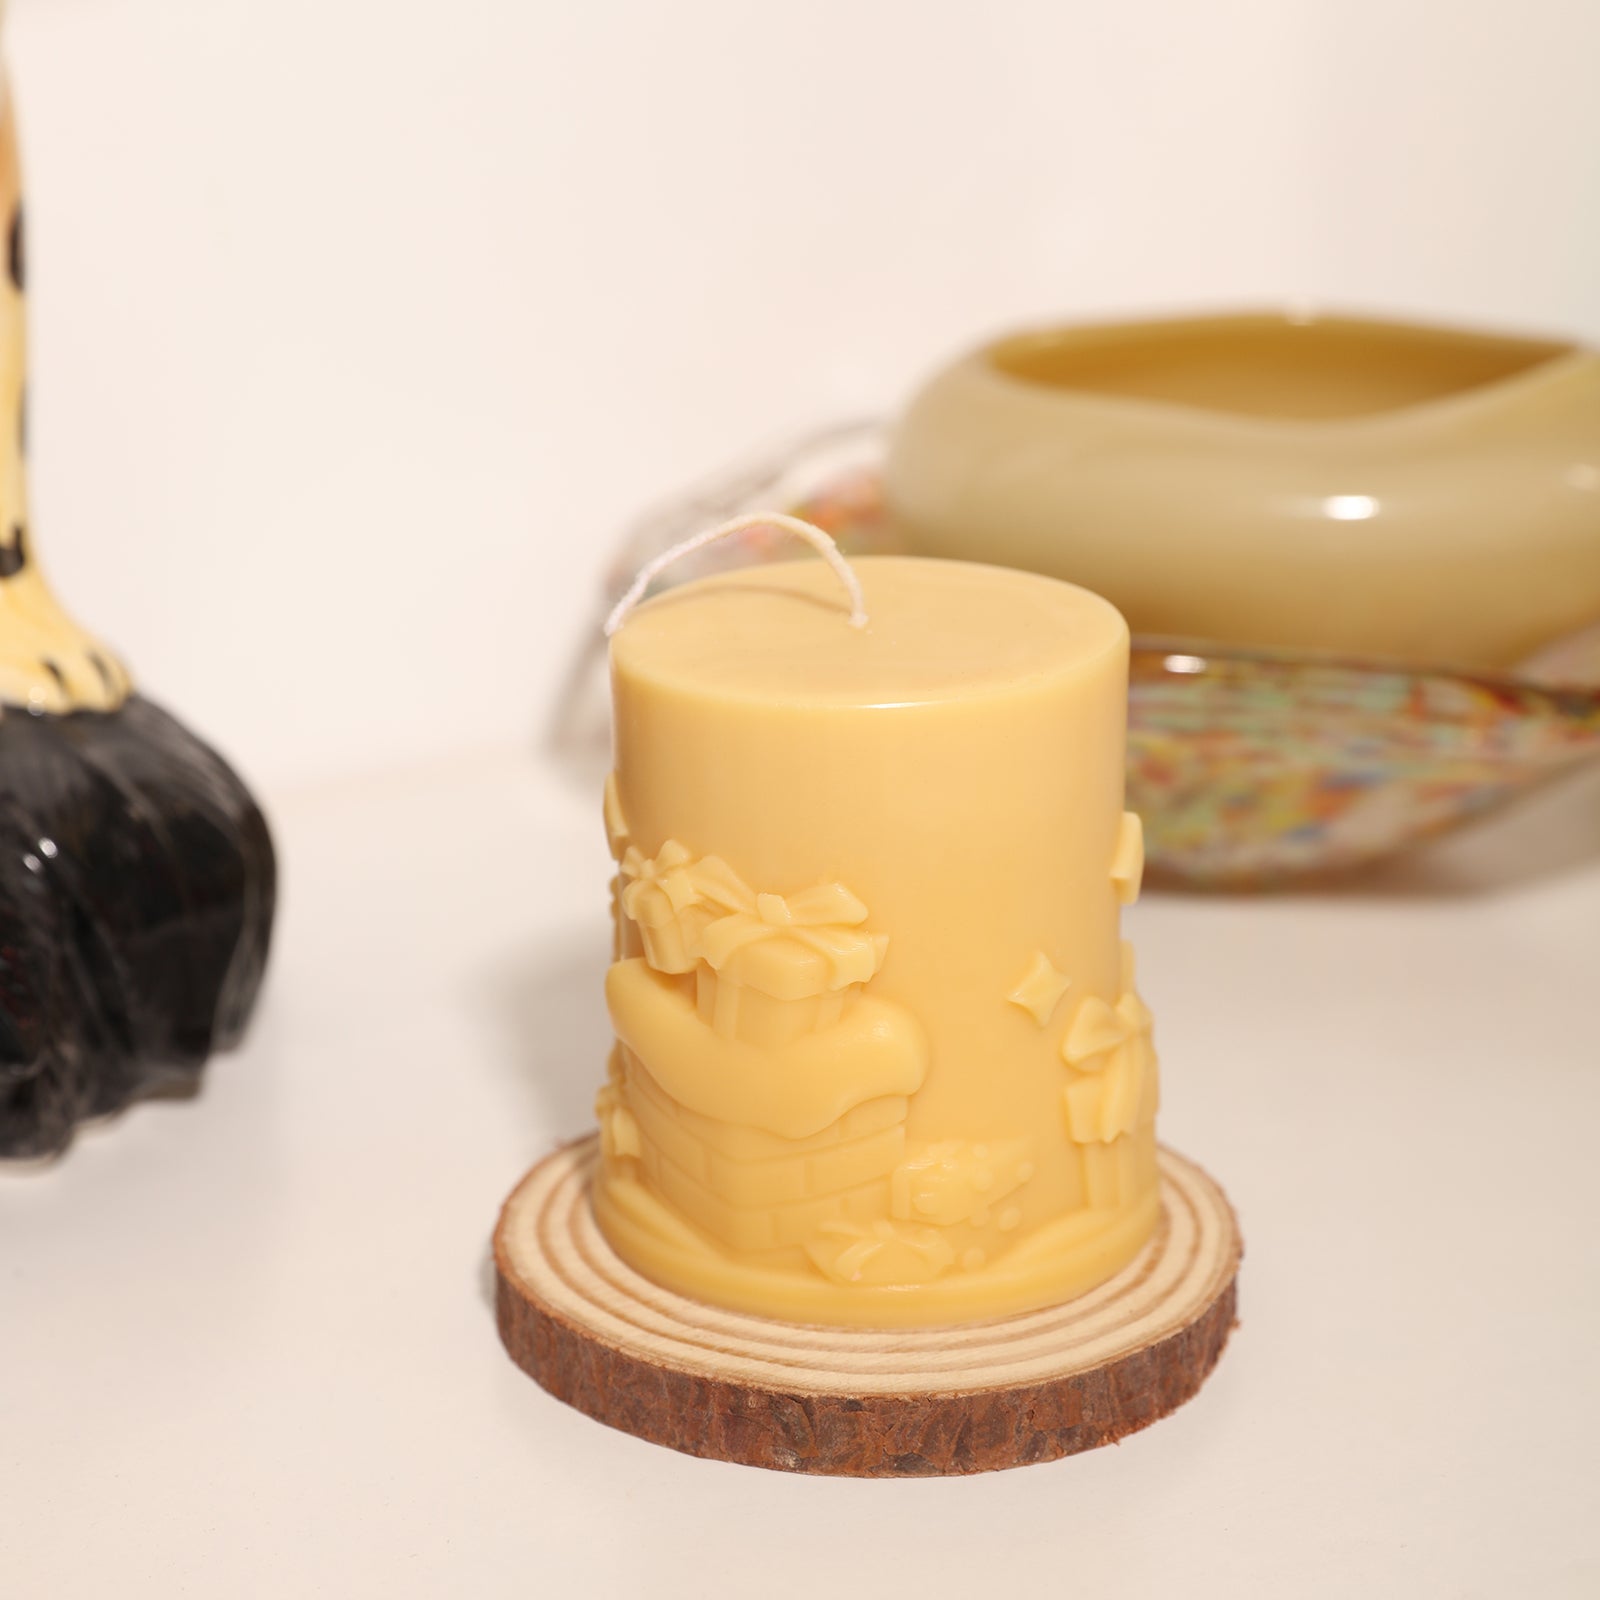 Miniature Fairy House Candle Silicone Mold – Boowan Nicole